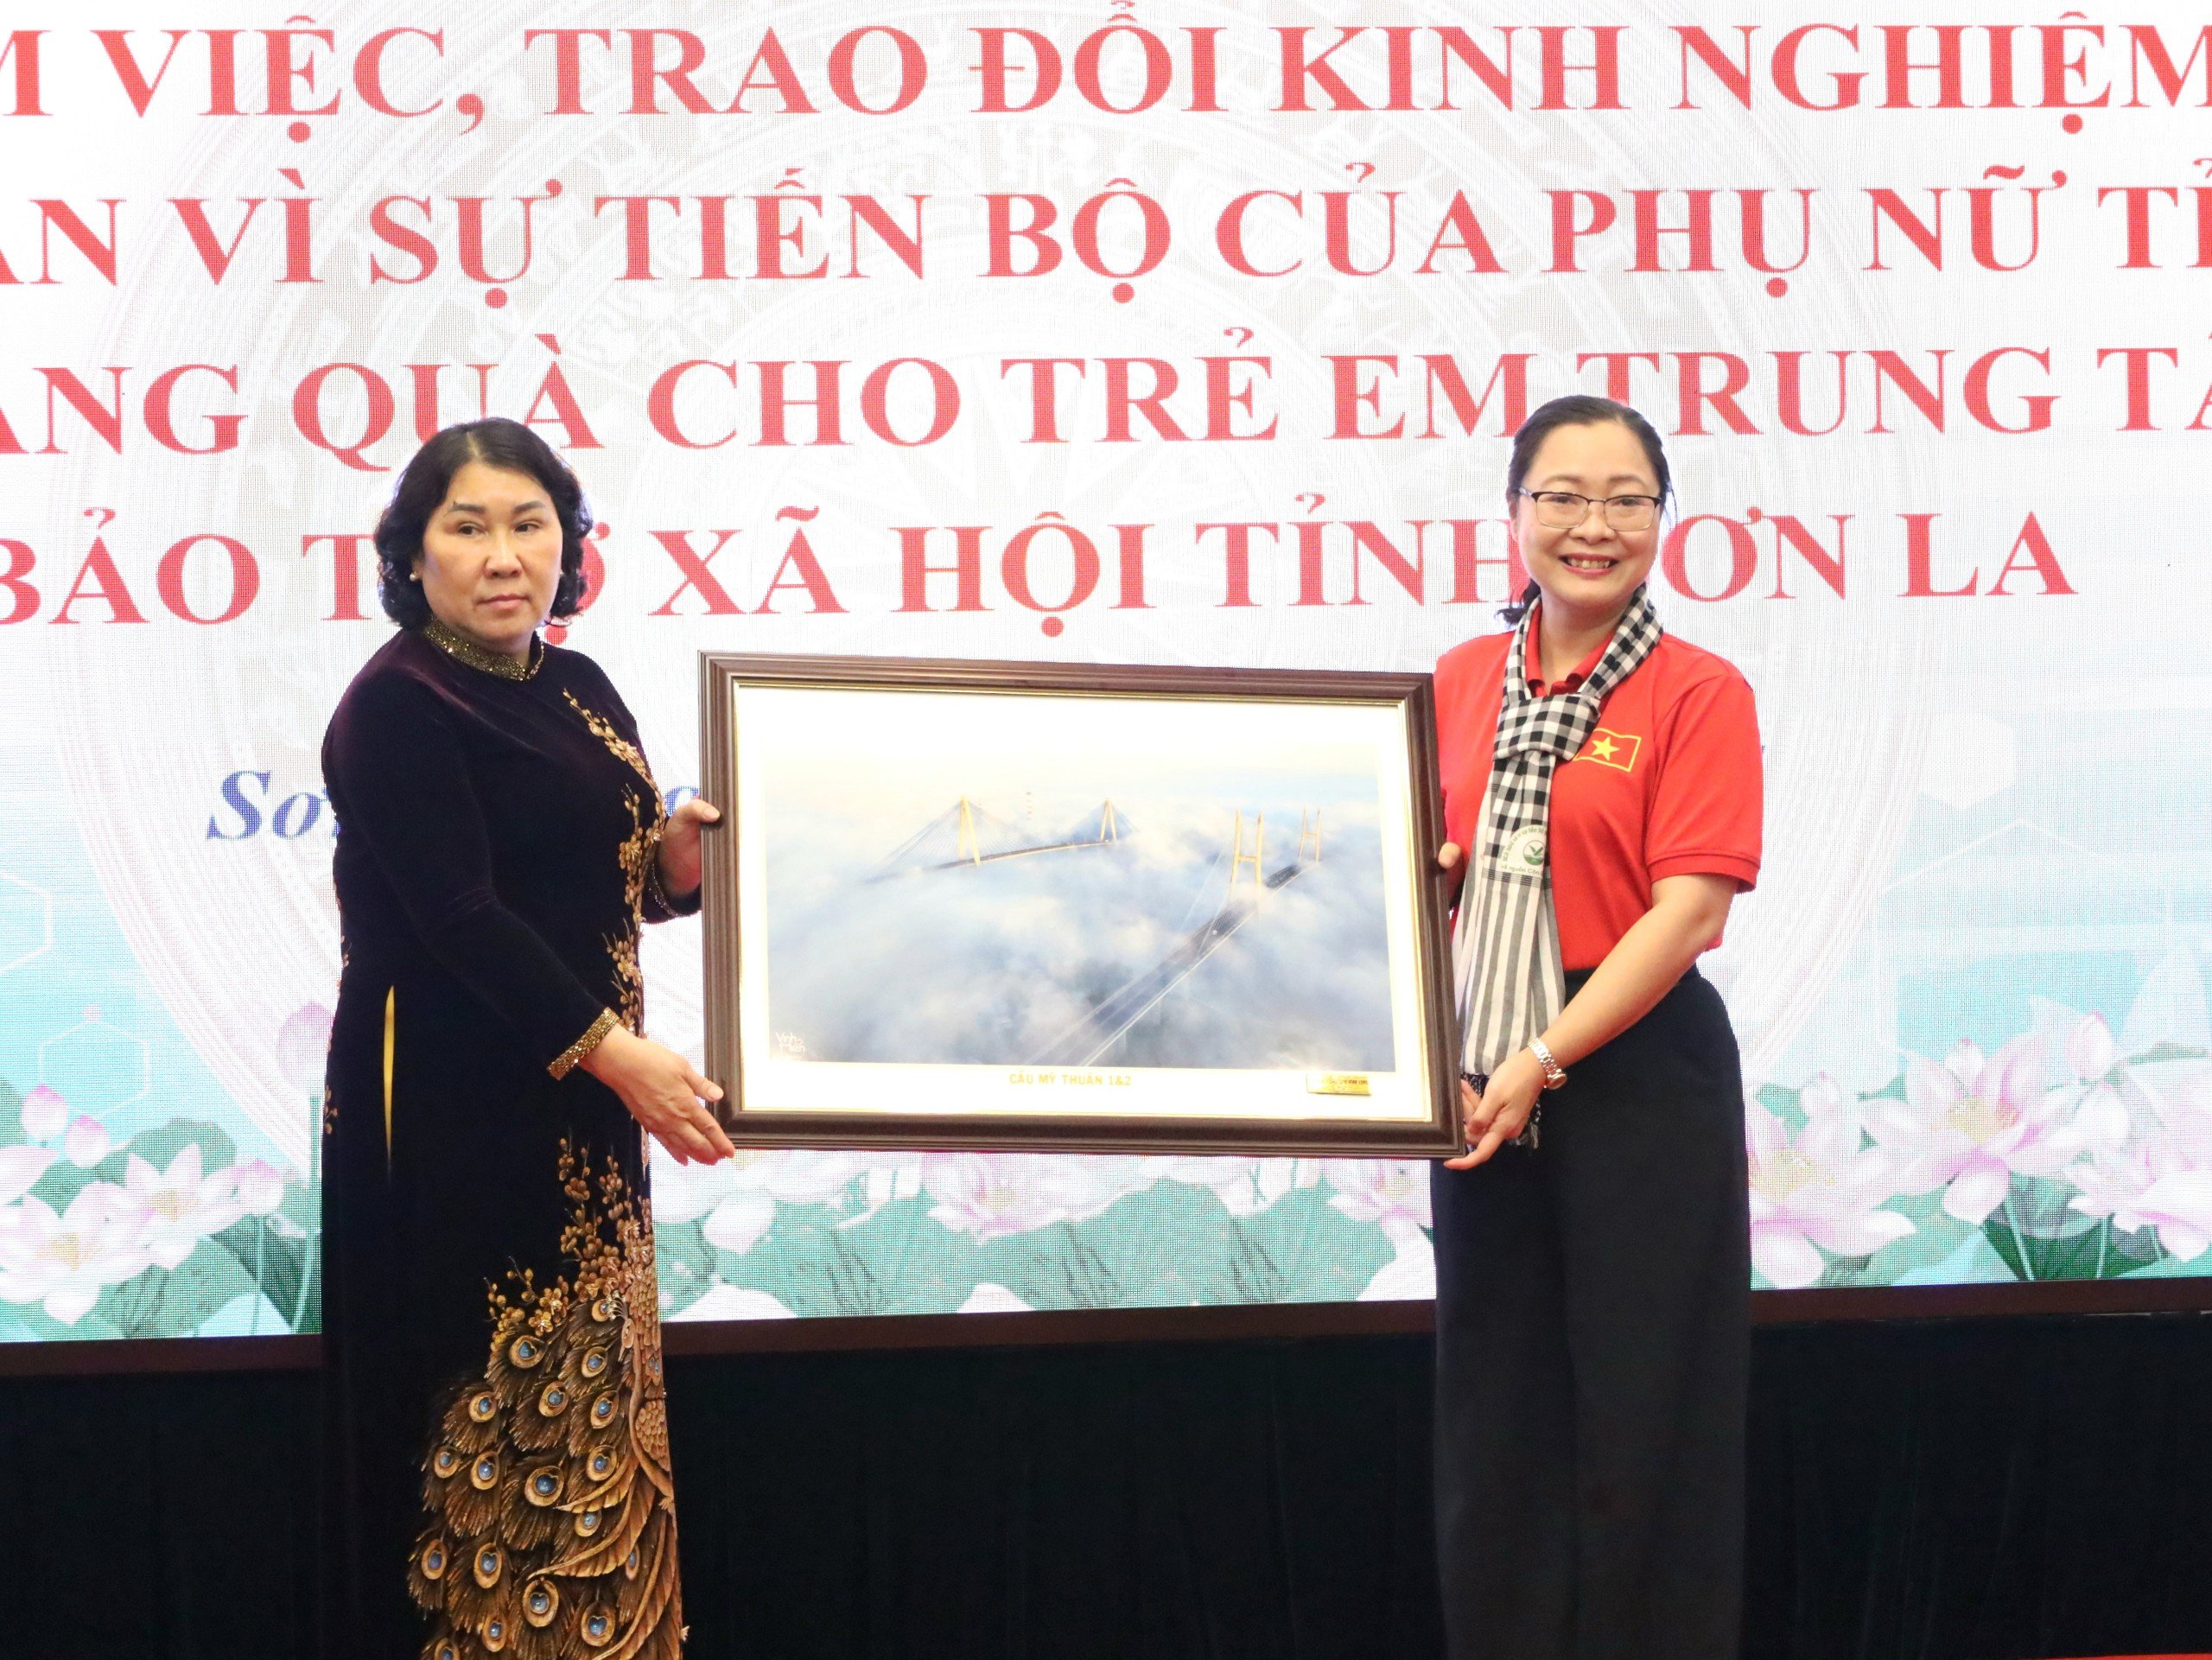 Bà Nguyễn Thị Quyên Thanh - Phó Chủ tịch UBND tỉnh, Trưởng ban Chỉ đạo bình đẳng giới và vì sự tiến bộ của phụ nữ tỉnh Vĩnh Long tặng quà cho Ban vì sự tiến bộ của phụ nữ tỉnh Sơn La.